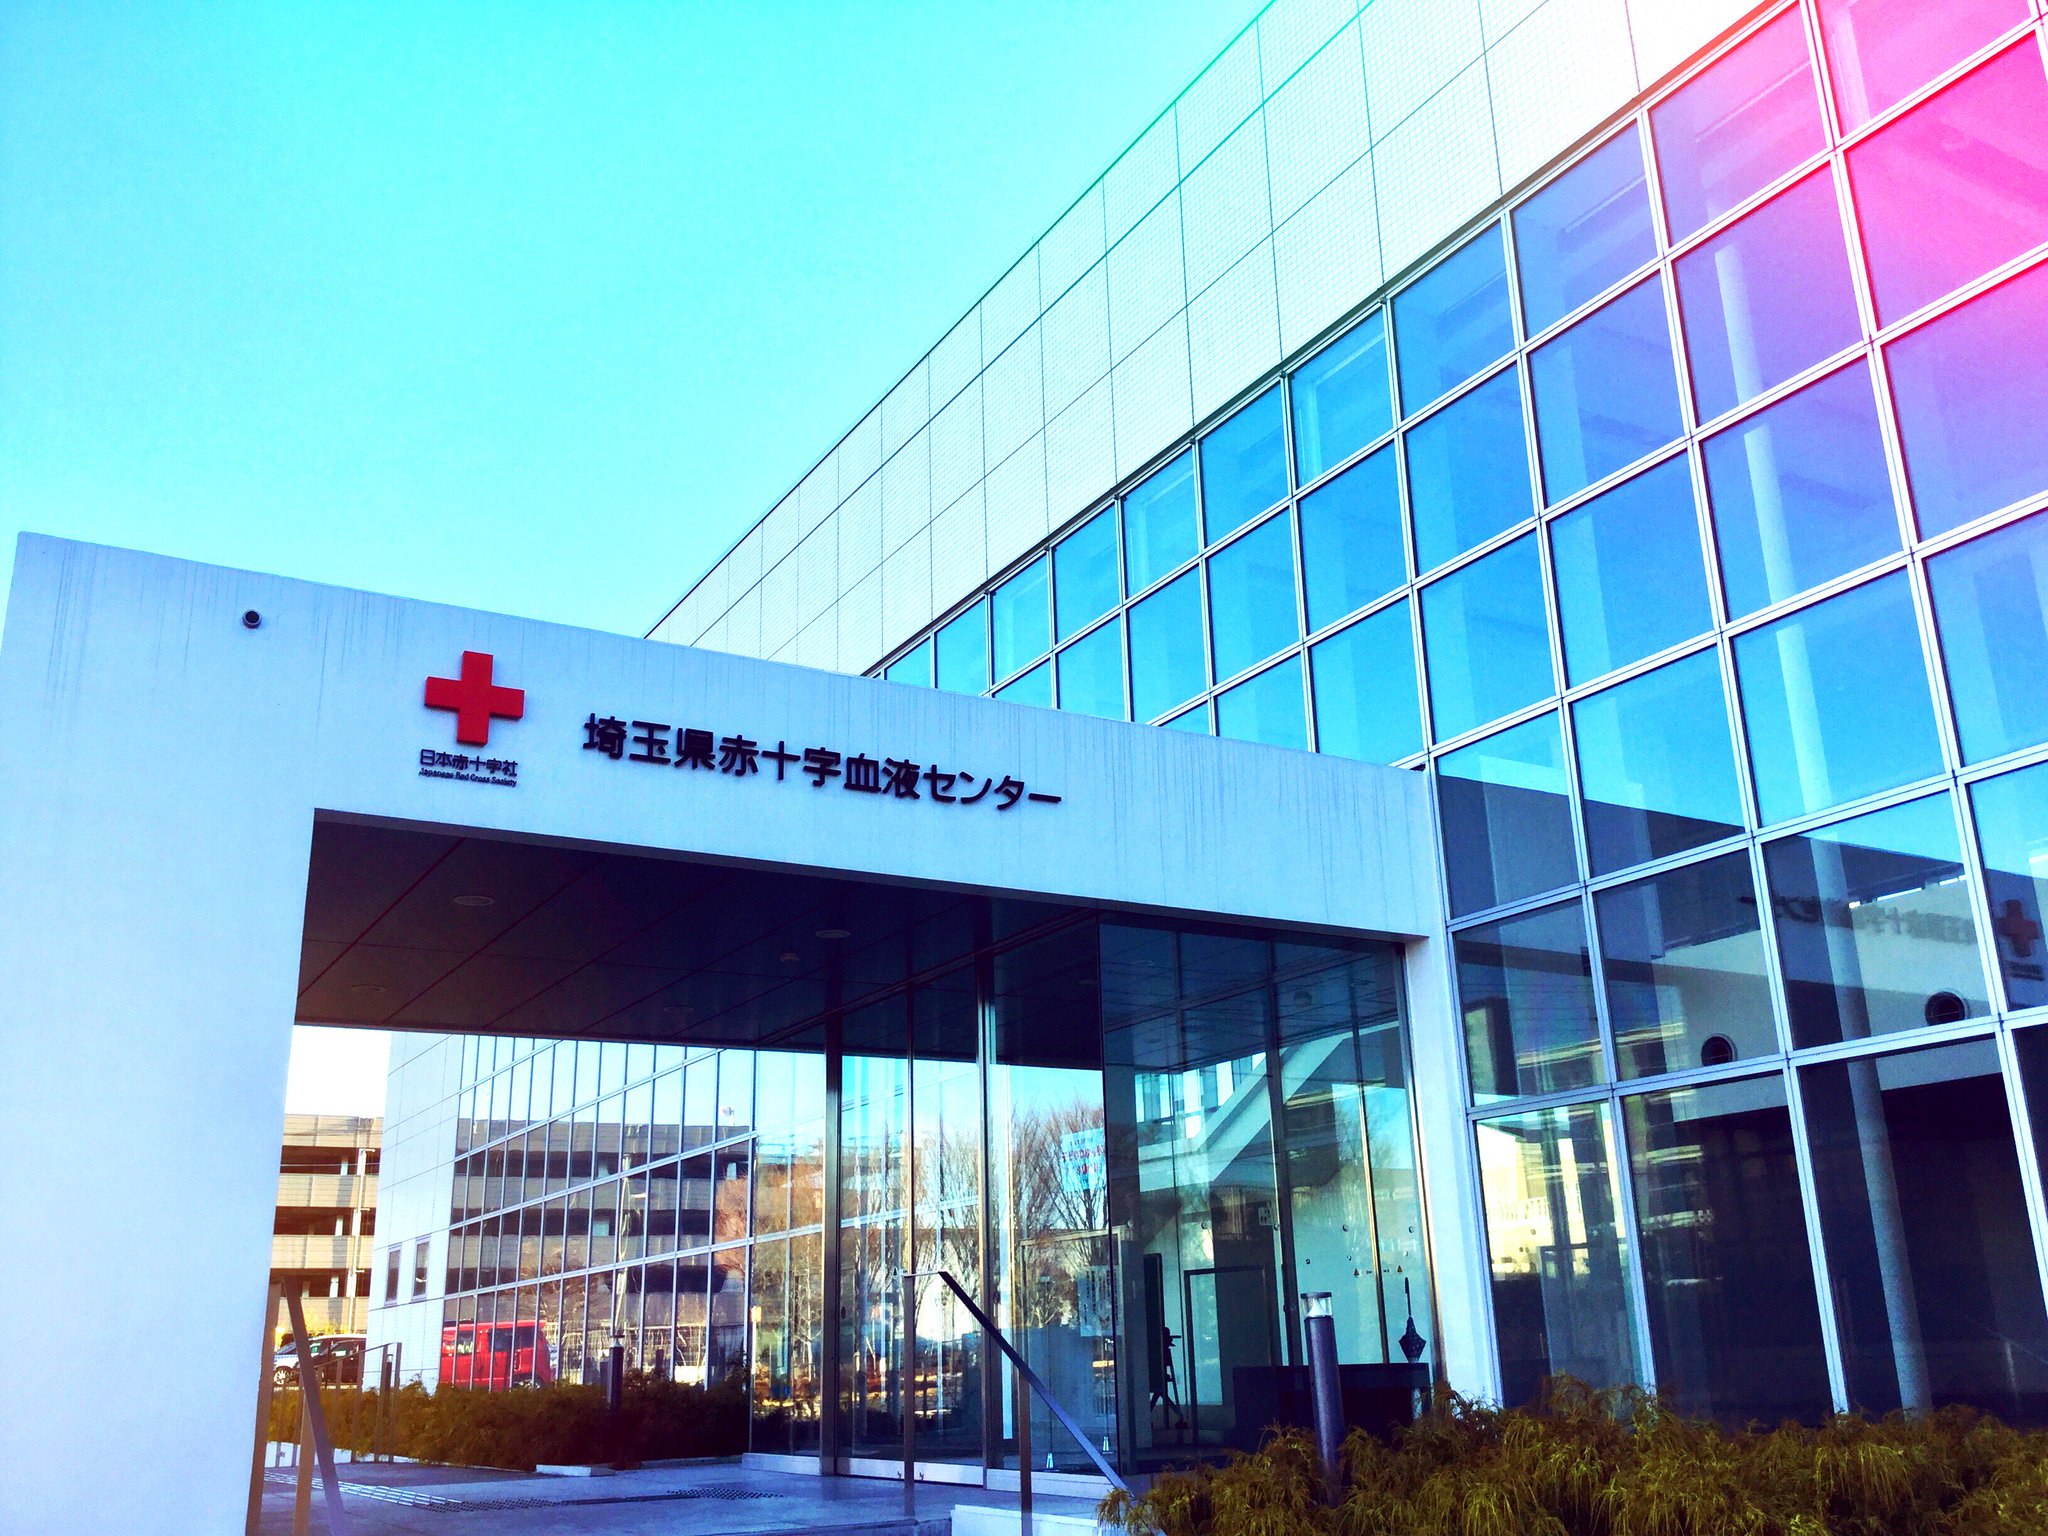 エビオ君（埼玉県献血マスコット公式） on Twitter "この前、埼玉県赤十字血液センター に行ってきたんだ